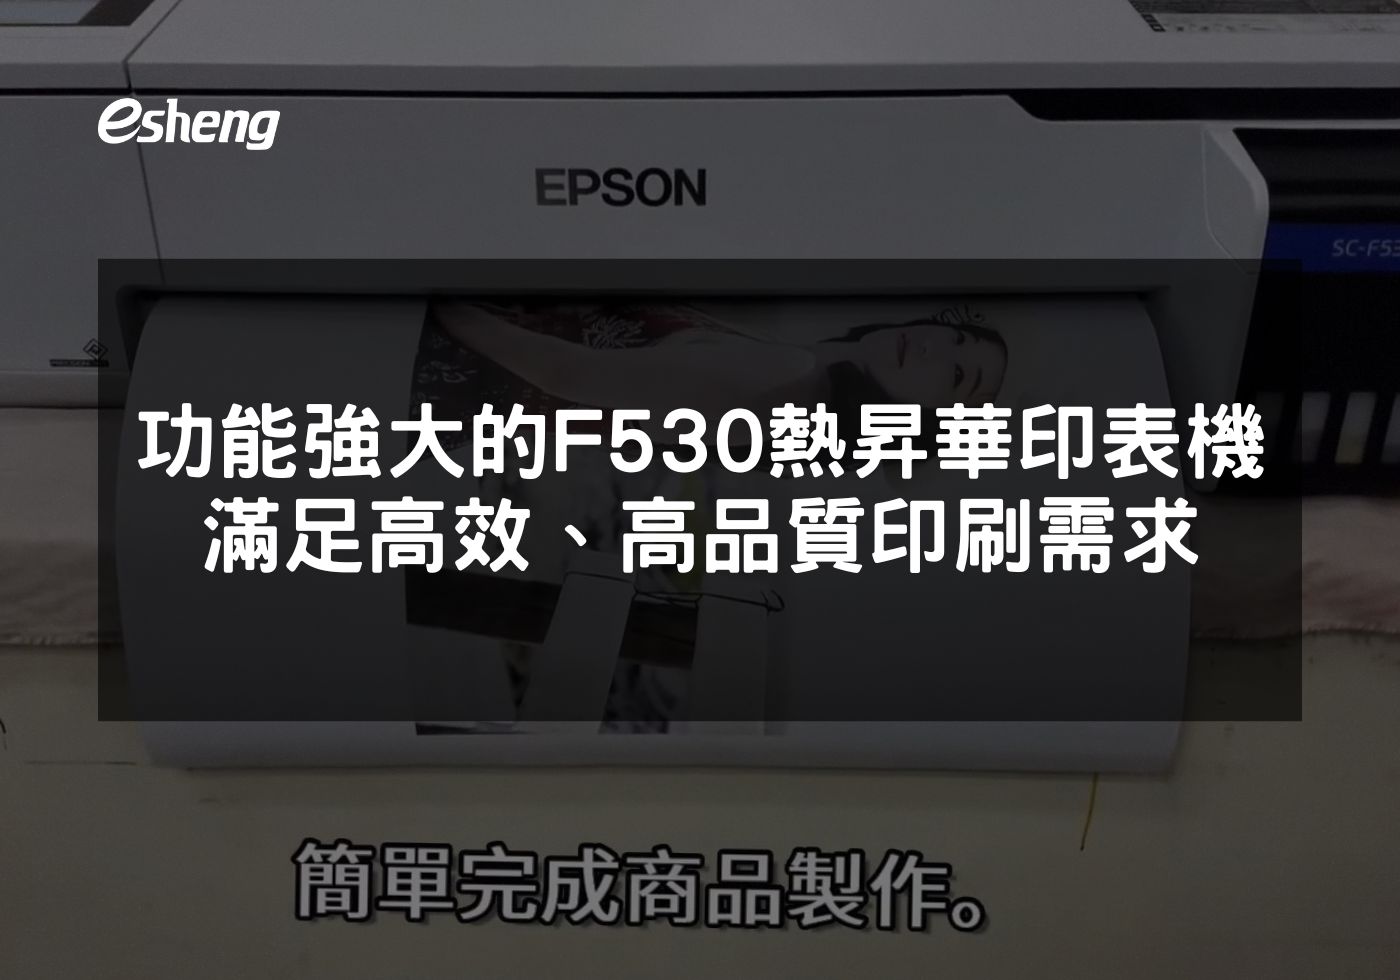 功能強大的EPSON F530 熱昇華印表機，滿足高效、高品質印刷需求